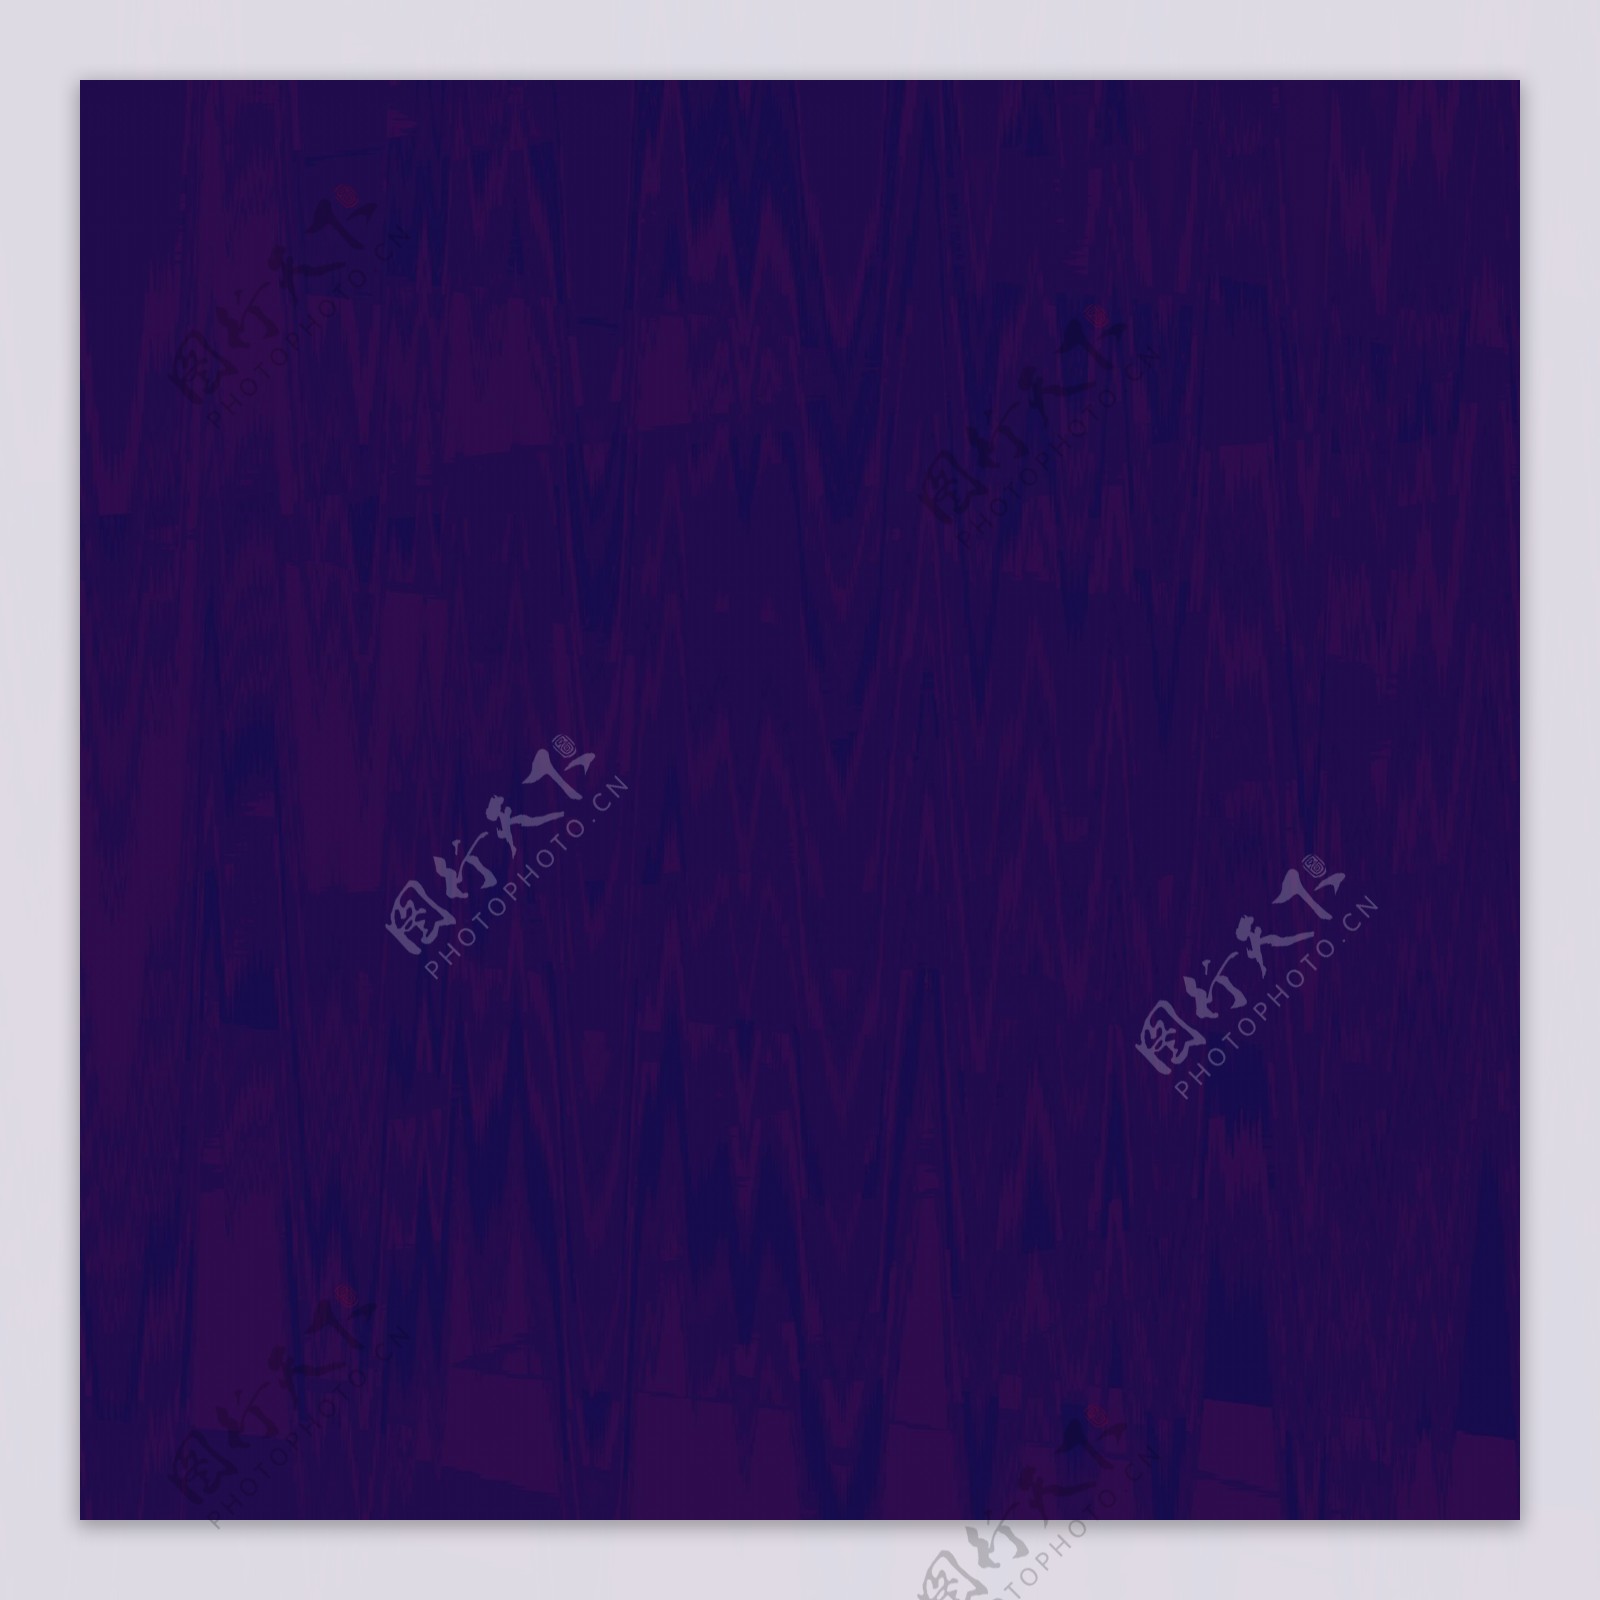 紫色壁纸高清-千图网